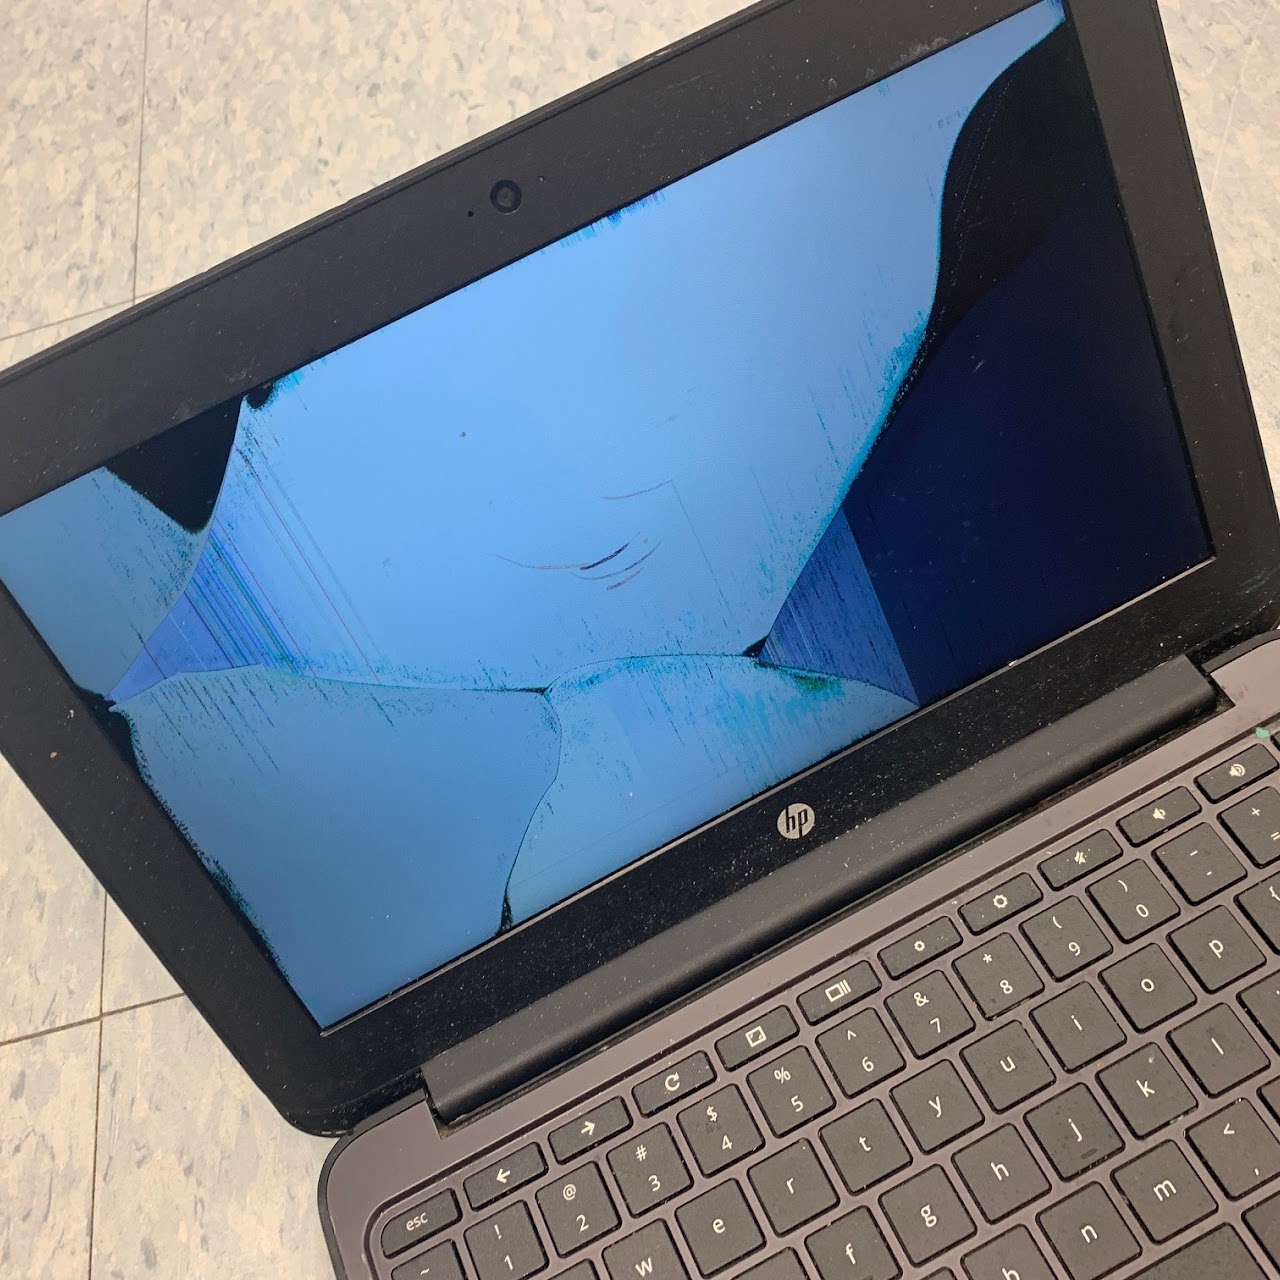 broken laptop